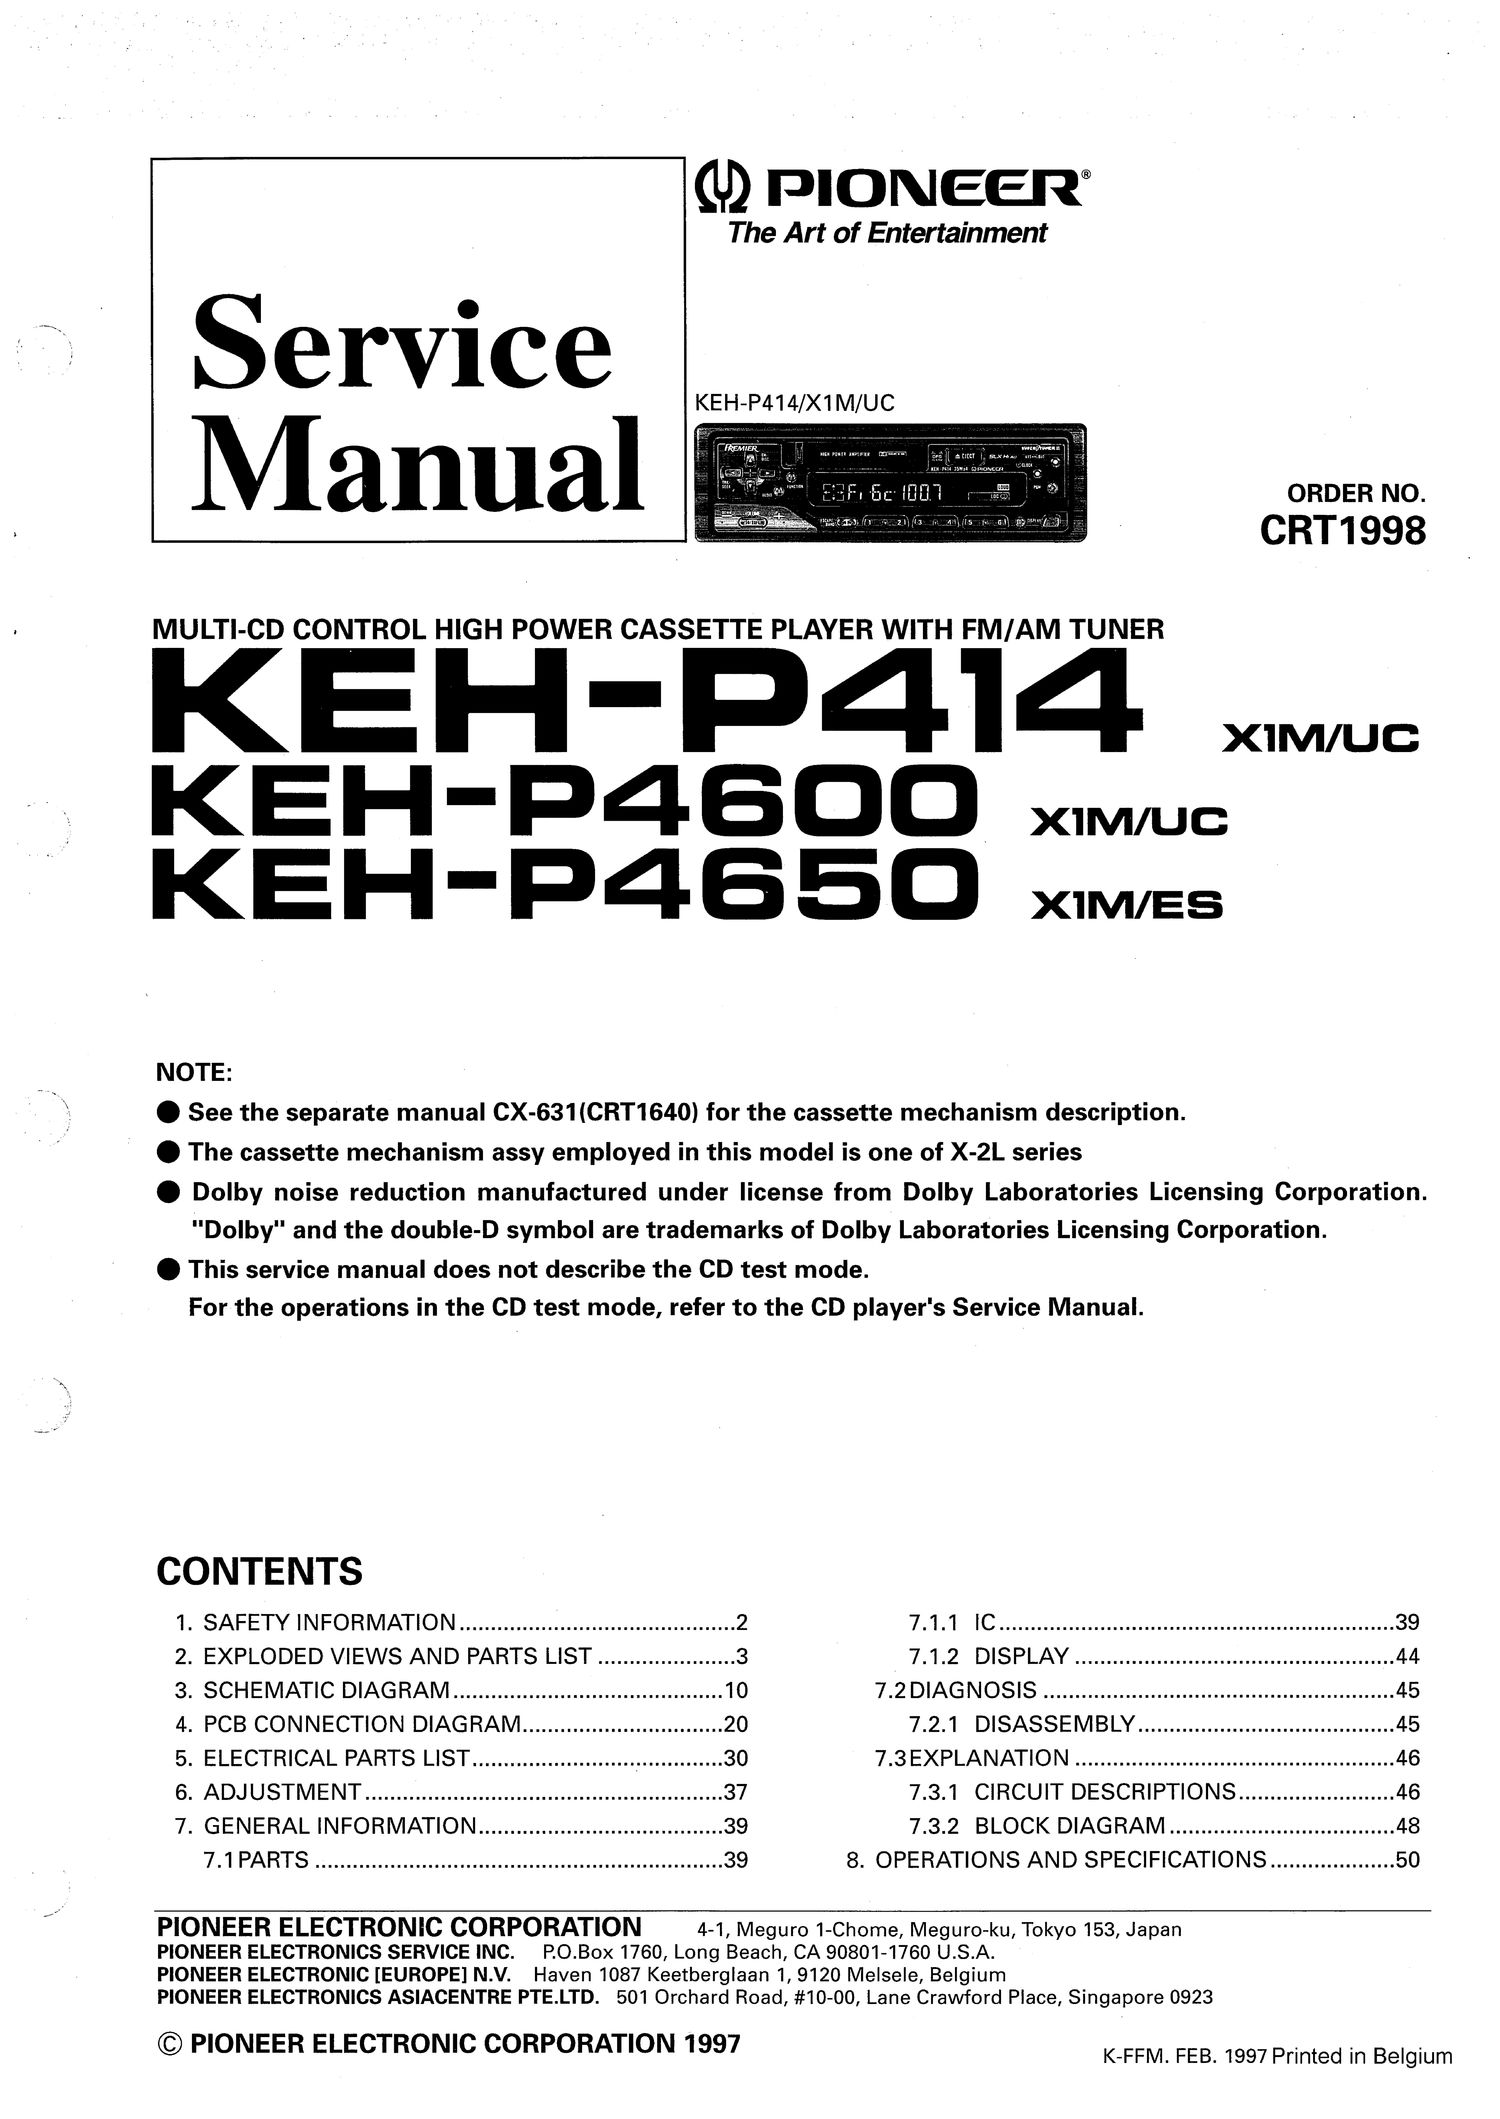 pioneer kehp 4600 service manual